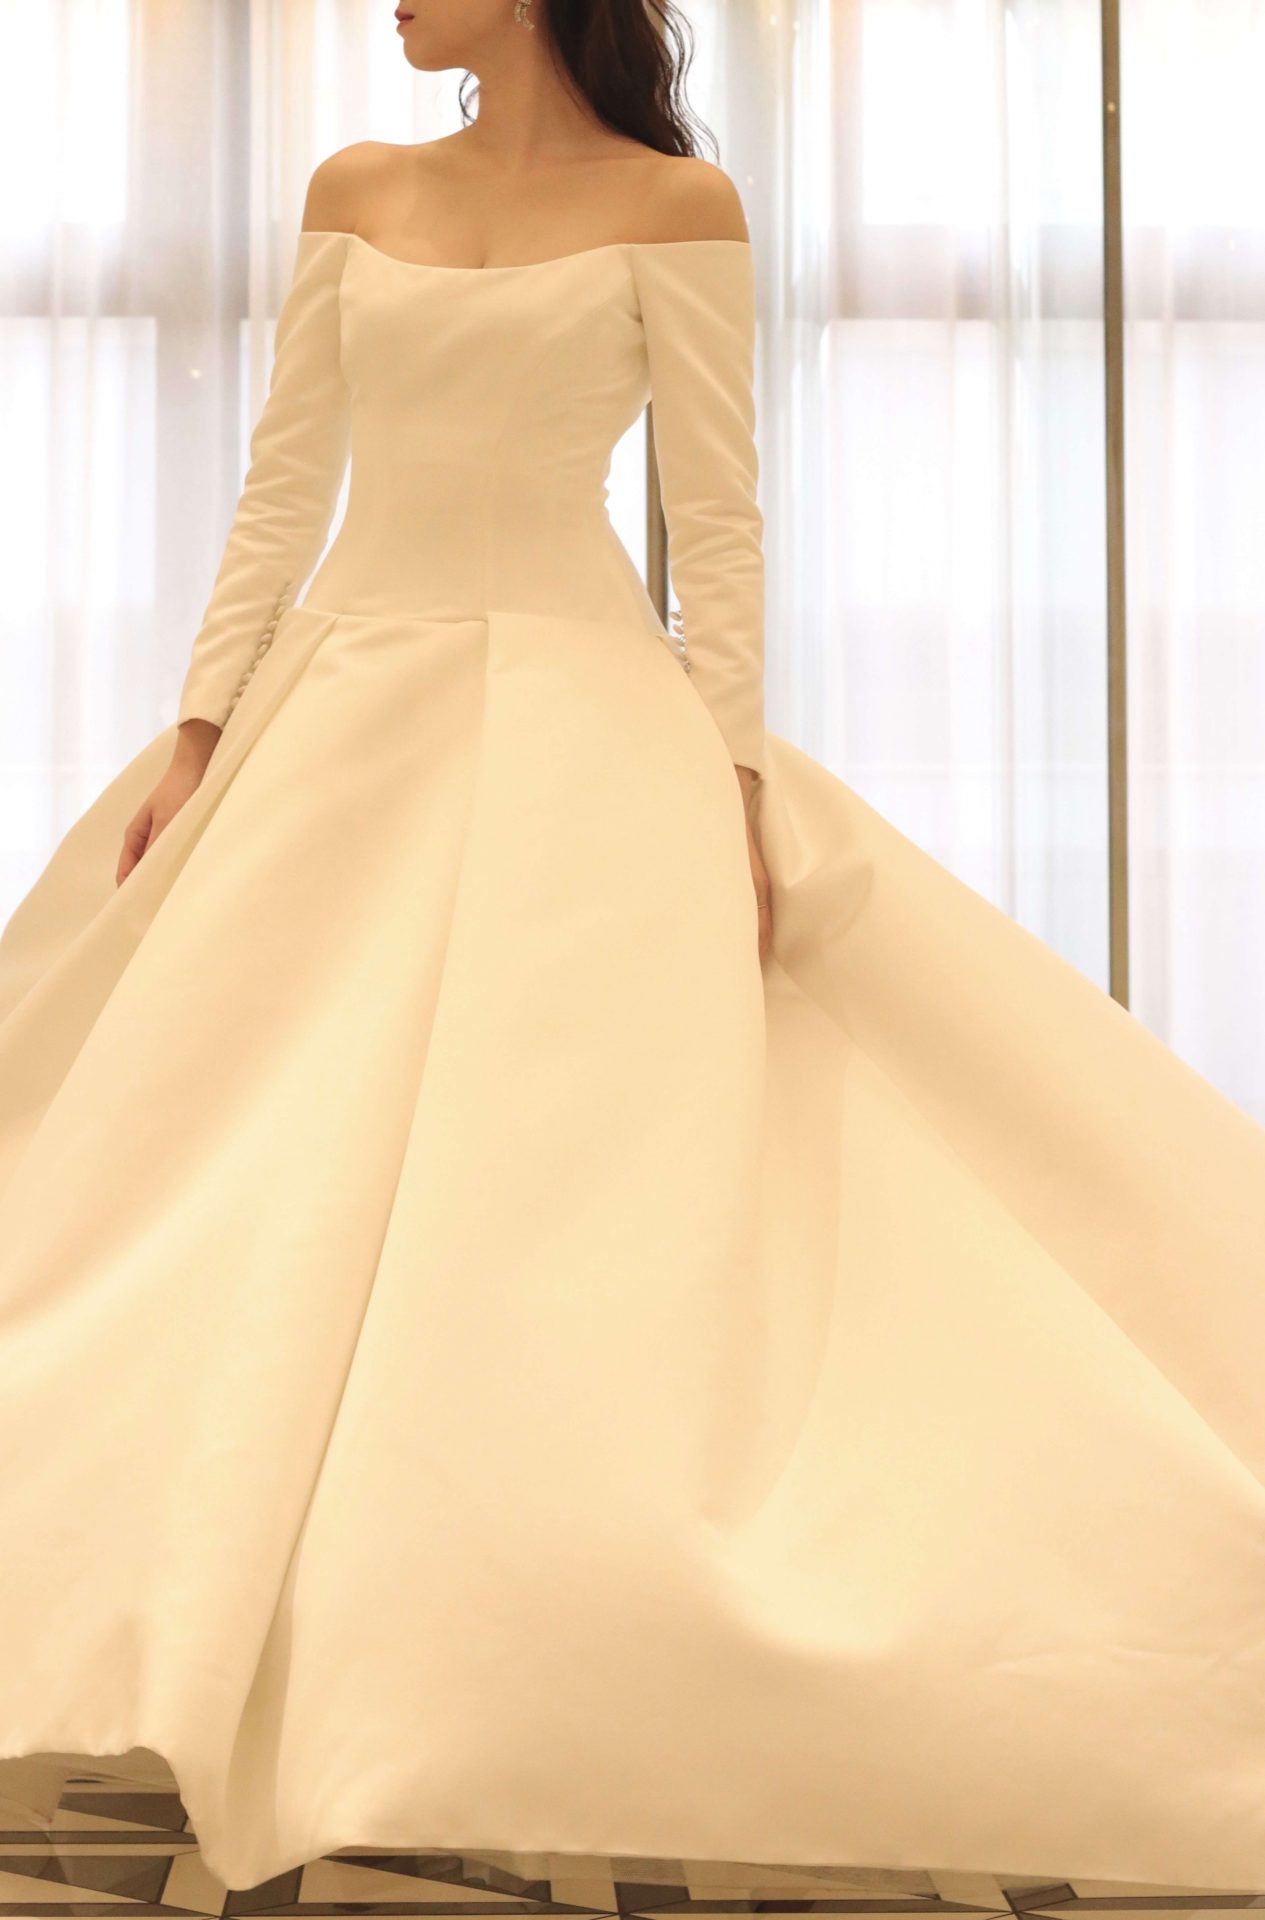 オフショルダーが美しいプリンセスラインのウェディングドレスはロイヤルウエディングを彷彿とさせるクラシカルで洗練された上品なウェディングスタイルをご希望の花嫁様におススメしたい一着です